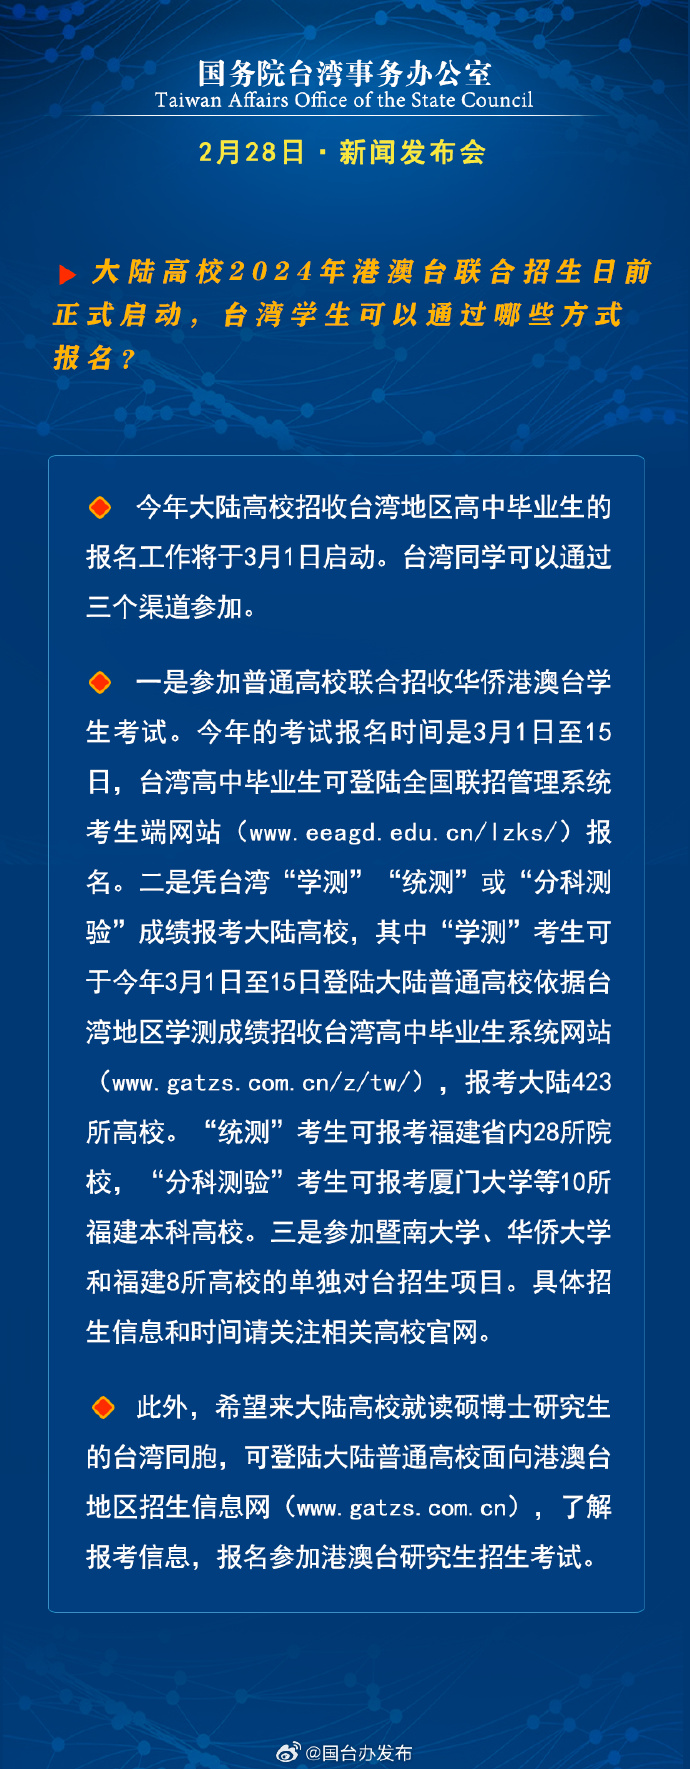 國務院台灣事務辦公室2月28日·新聞發佈會